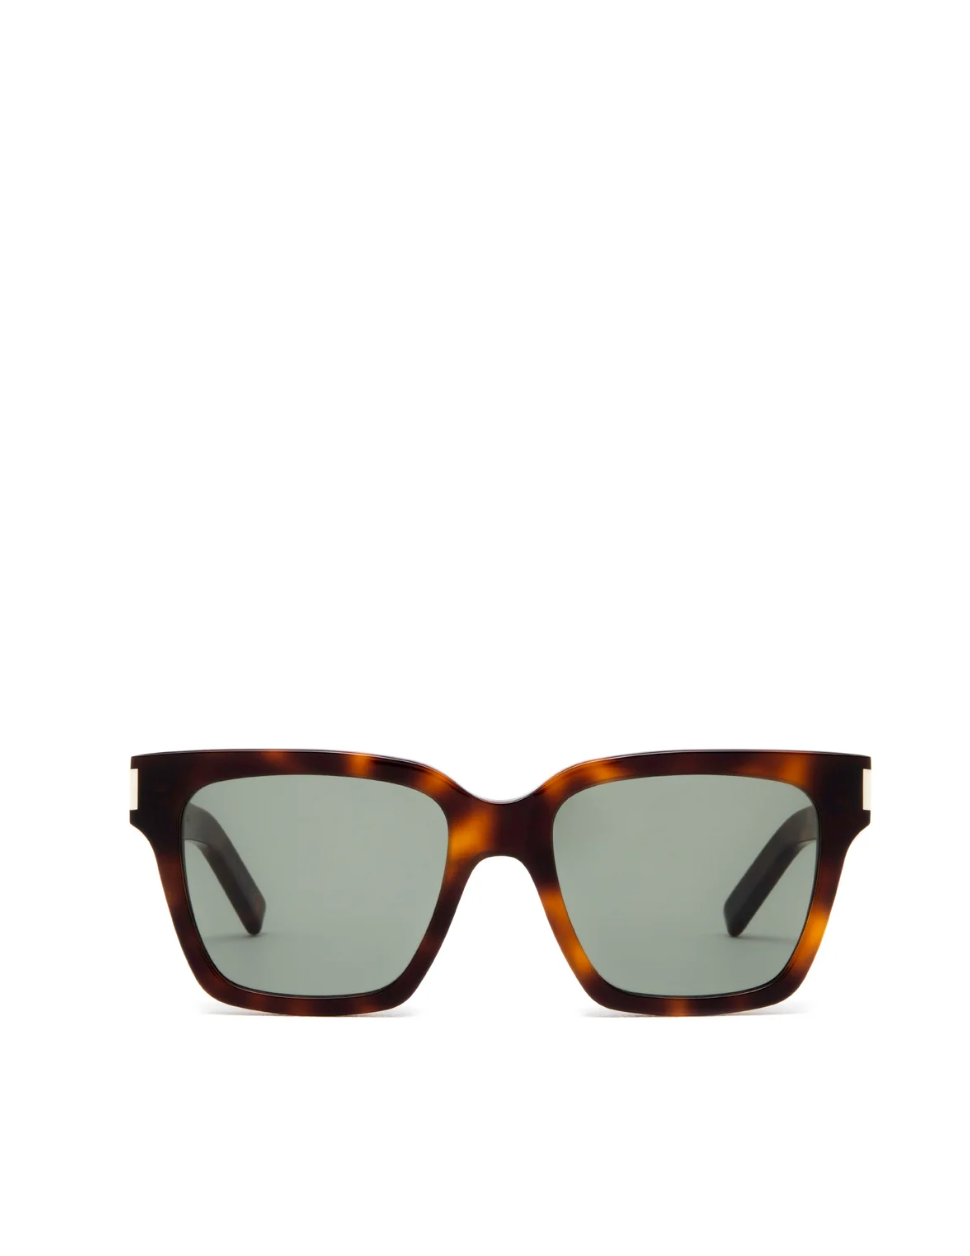 Saint Laurent Sunglasses Saint Laurent SL 560-003 Sunglasses Soho-Boutique